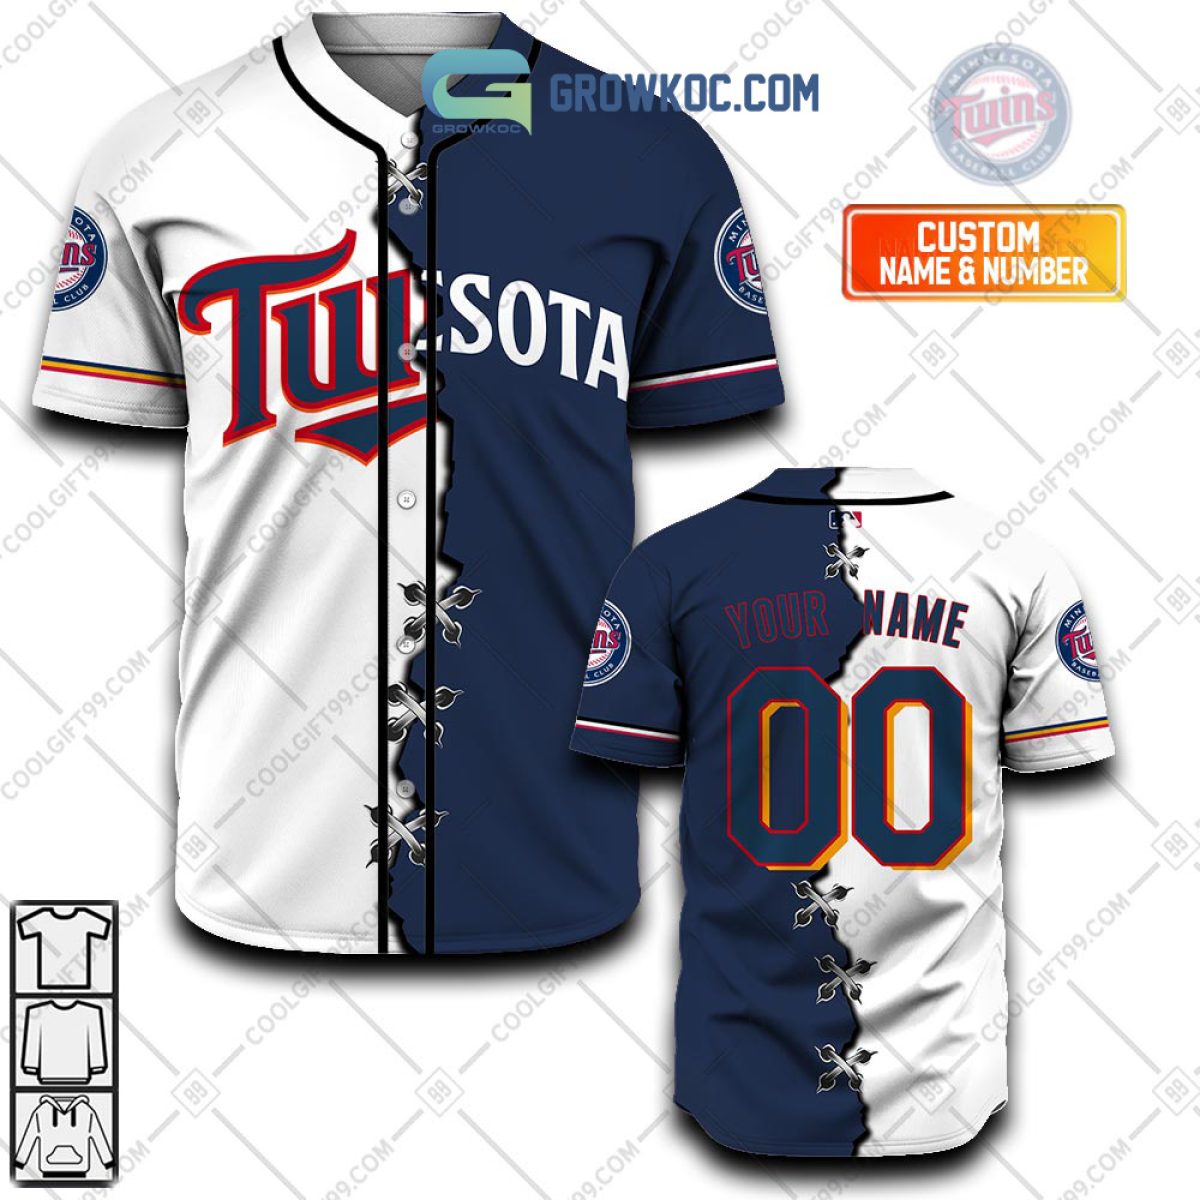 MLB Minnesota Twins Stitch Personalized Baseball Jersey - Express